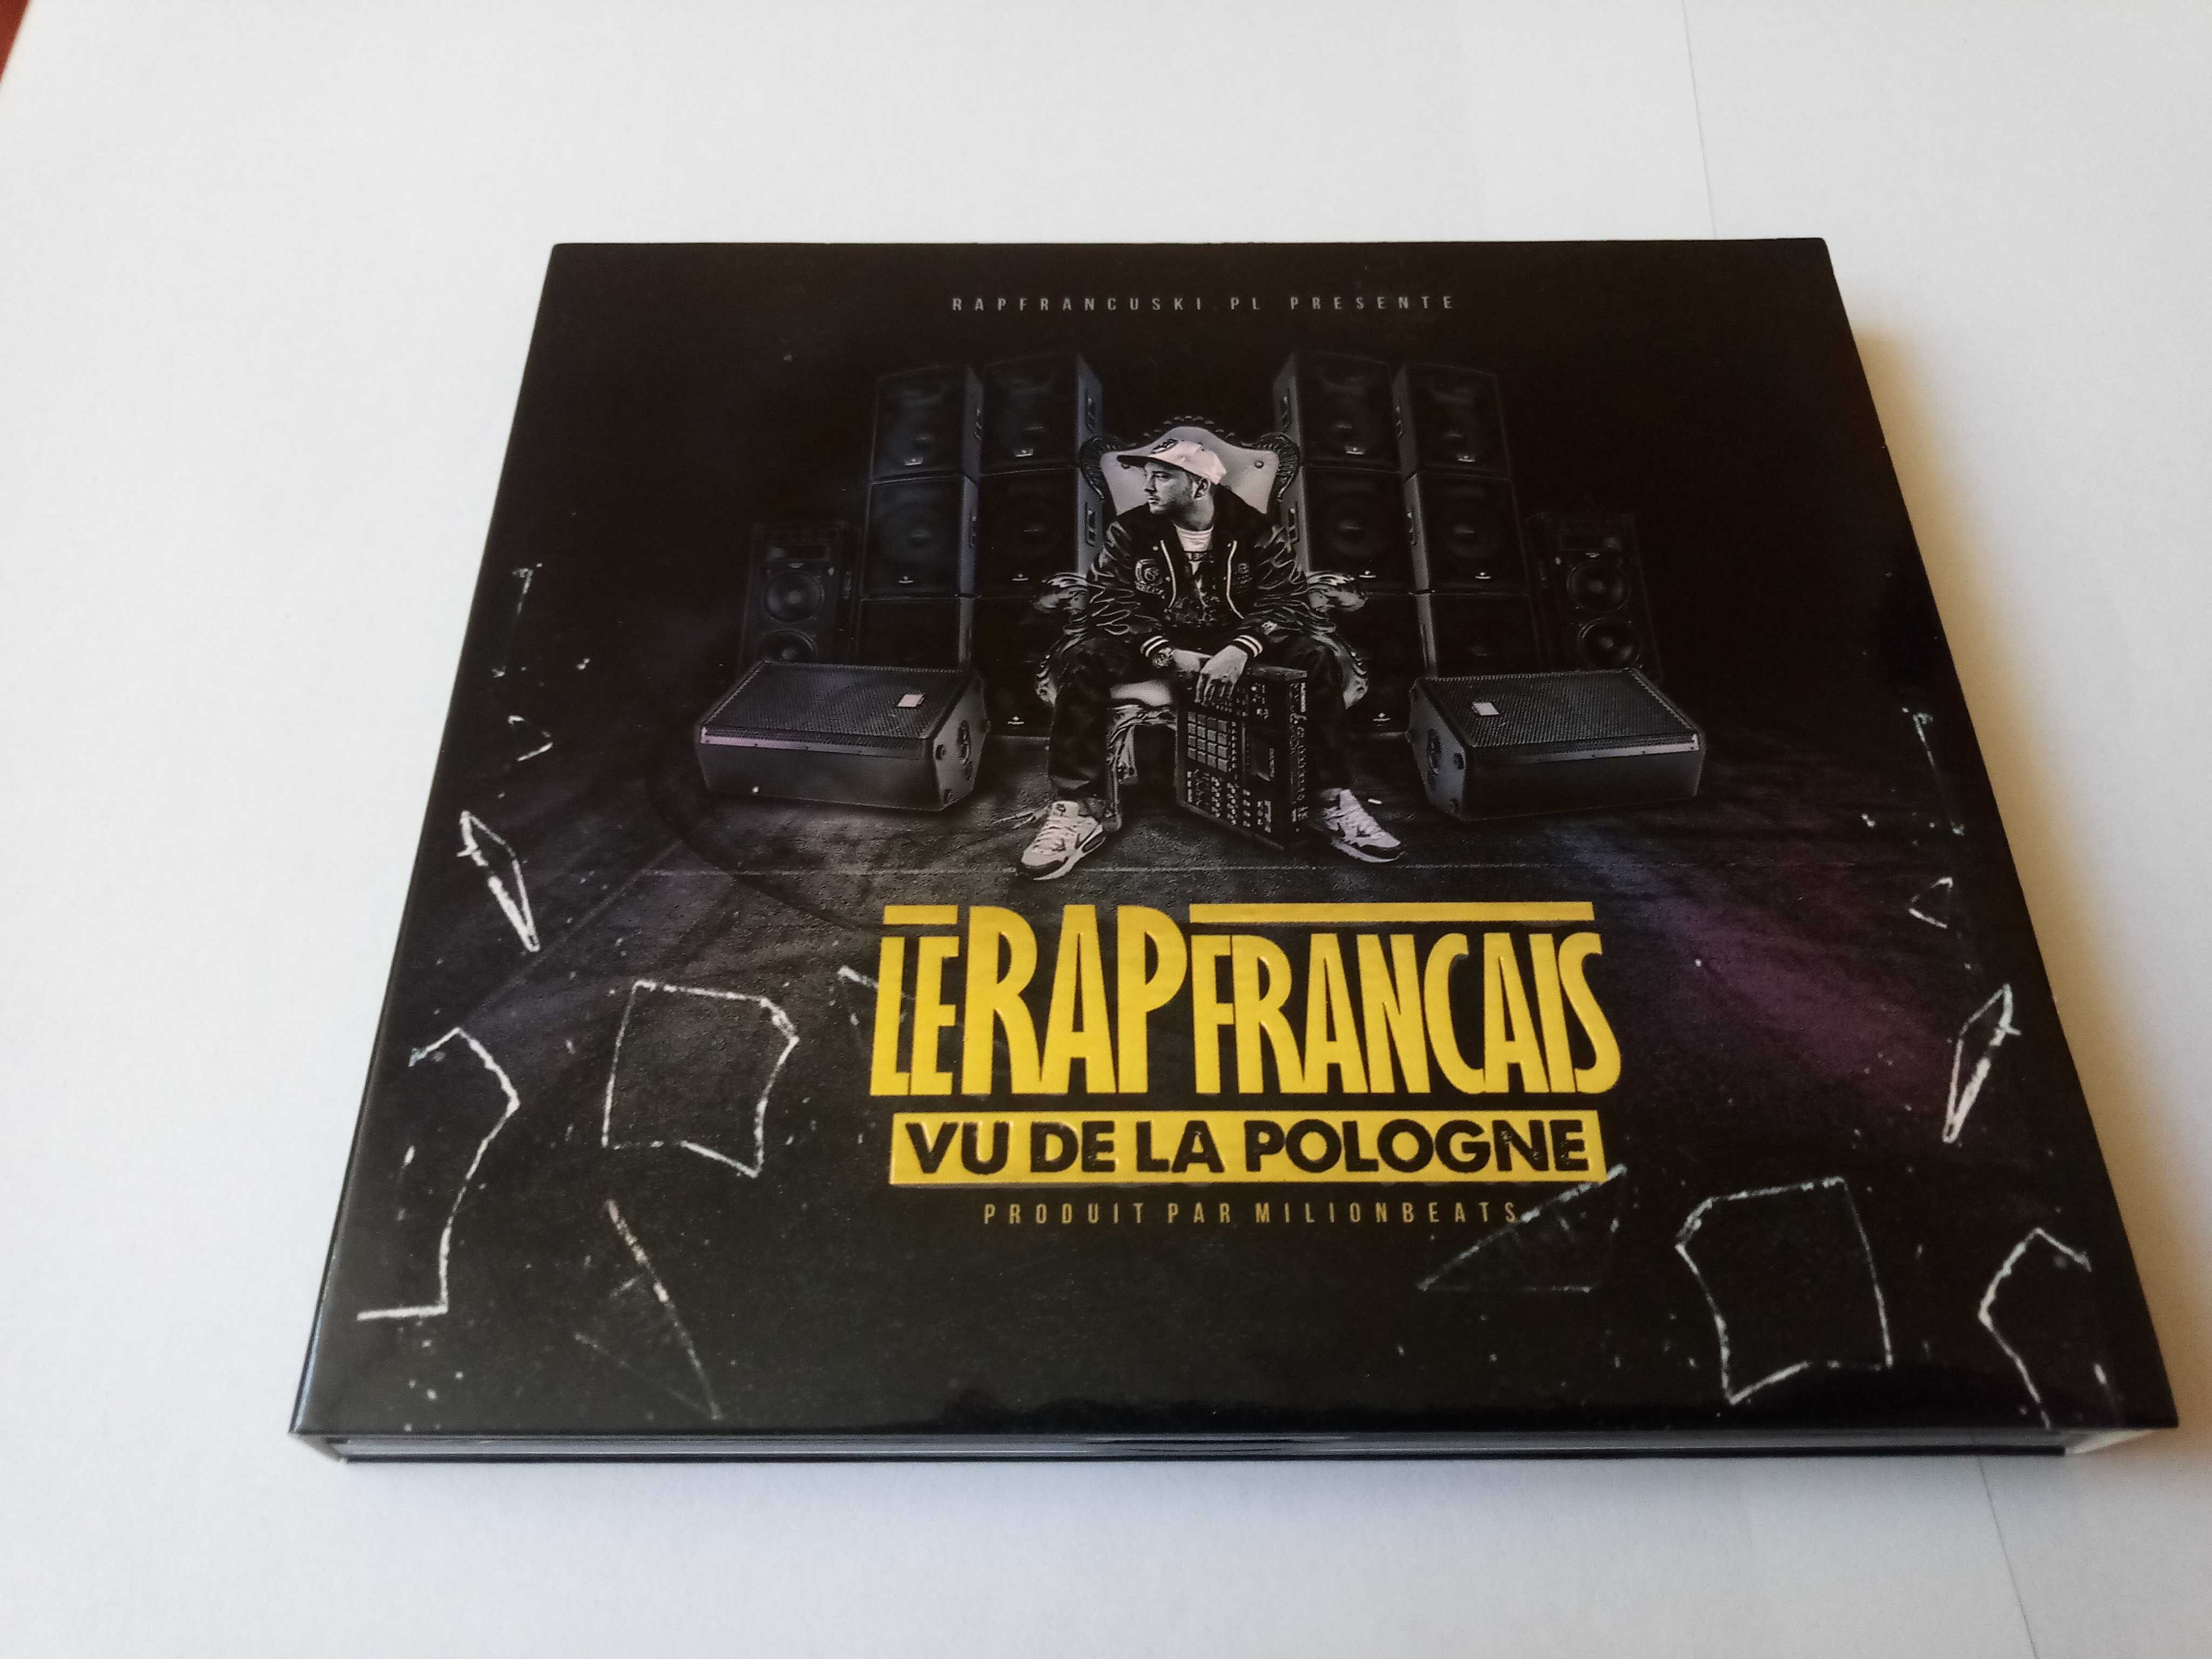 Milionbeats - Le Rap Francais Vu De La Pologne [2CD]